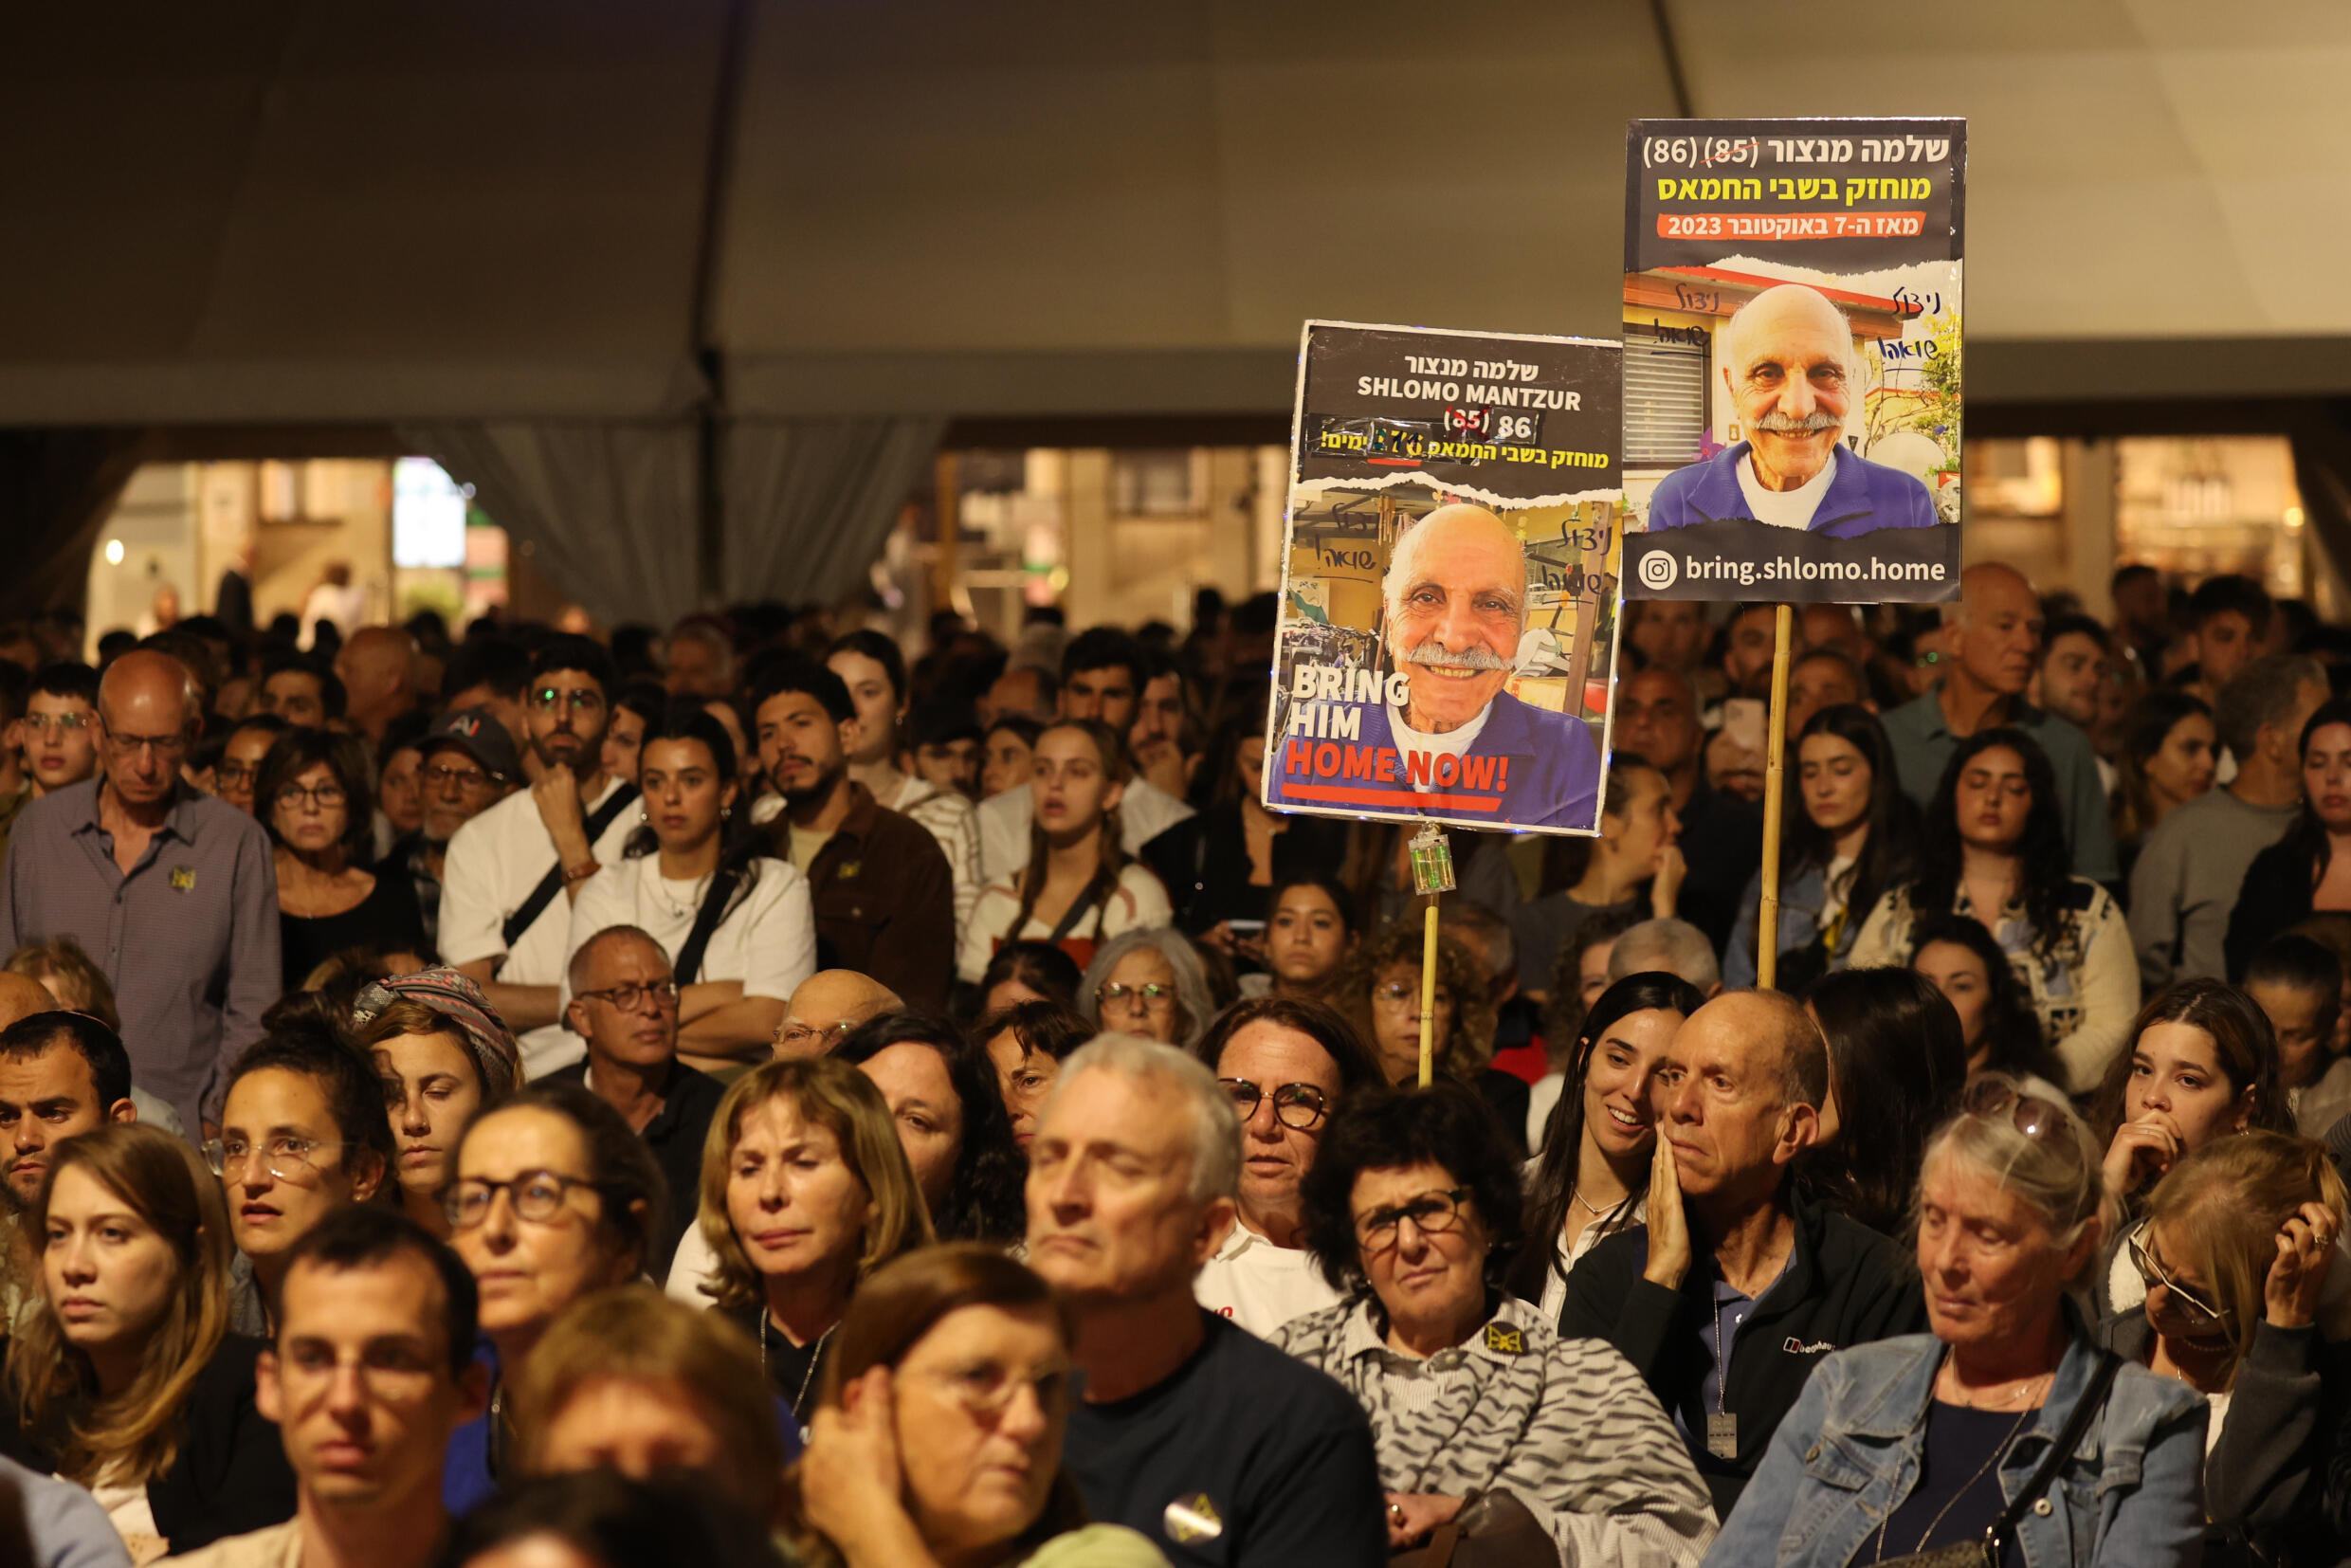 Israelis tragen Plakate mit Bildern von in Gaza festgehaltenen Geiseln bei einer Kundgebung in Tel Aviv am Holocaust-Gedenktag.